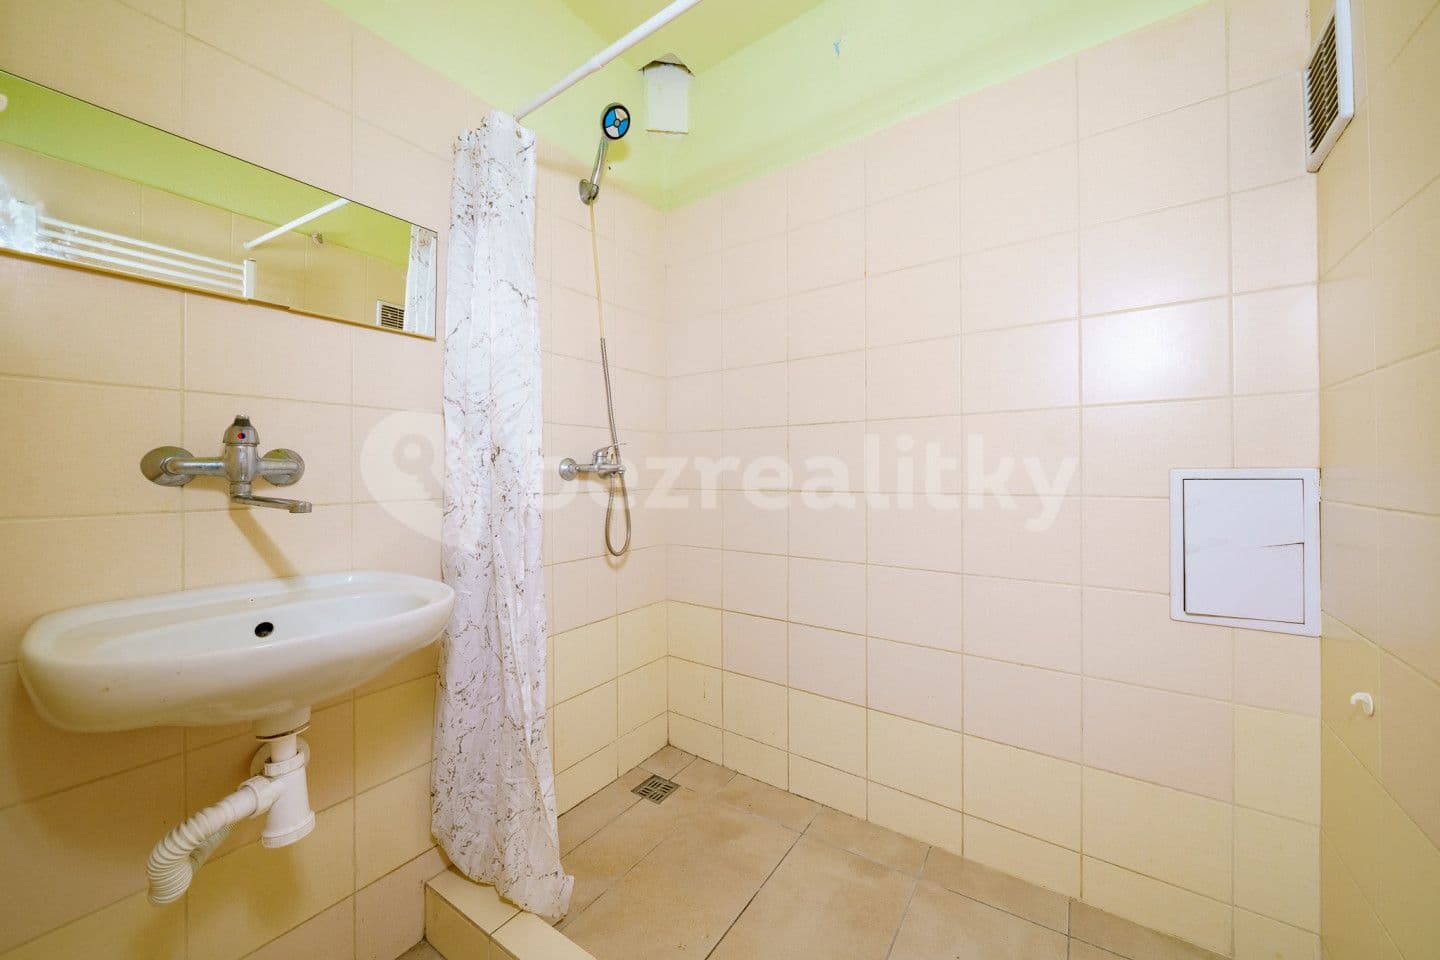 2 bedroom flat for sale, 49 m², Kamenná, Aš, Karlovarský Region